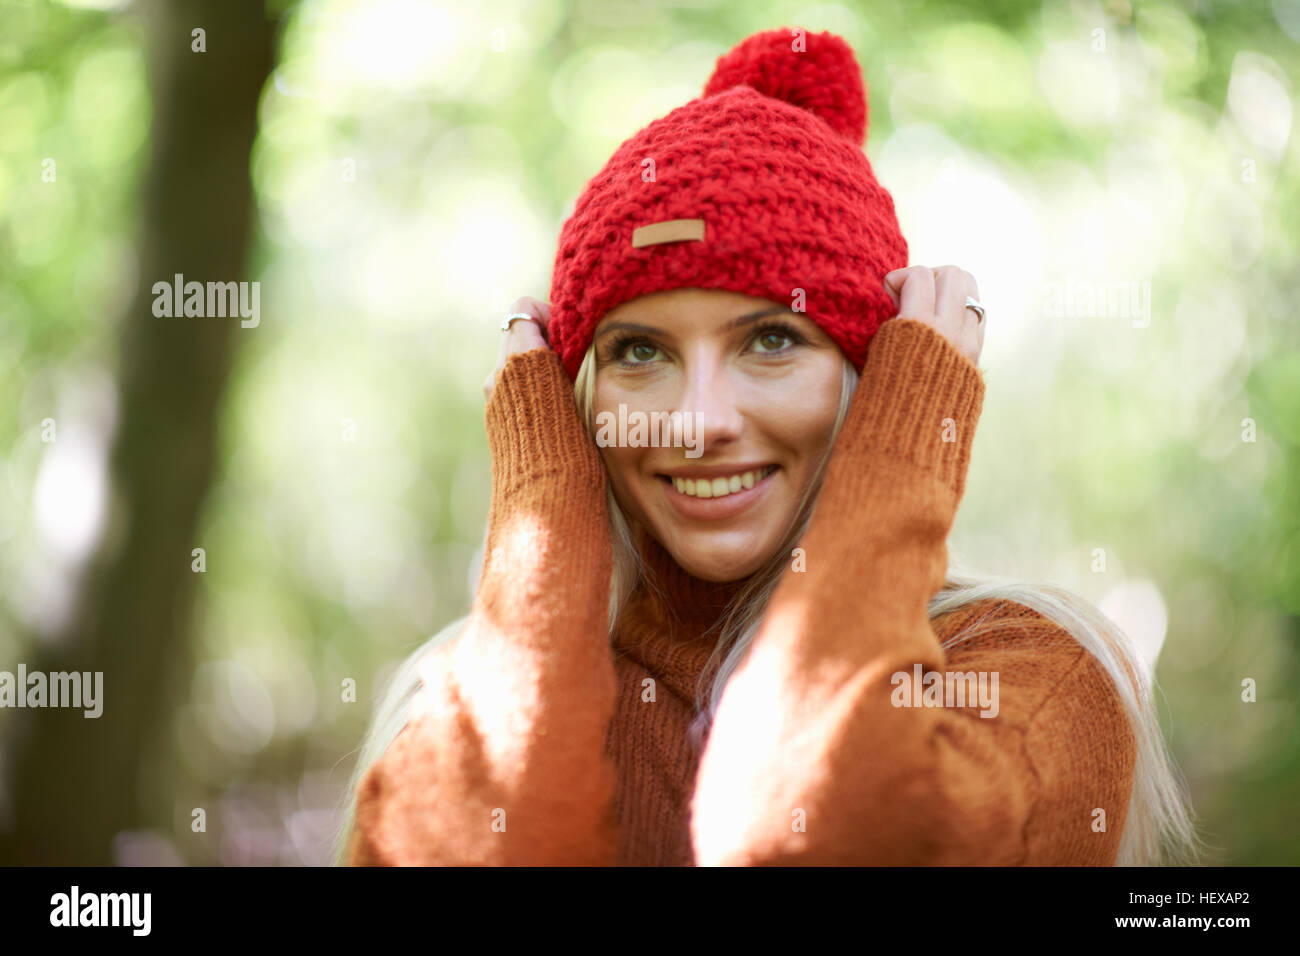 Ritratto di donna che indossa knit hat, le mani sulla testa che guarda lontano Foto Stock